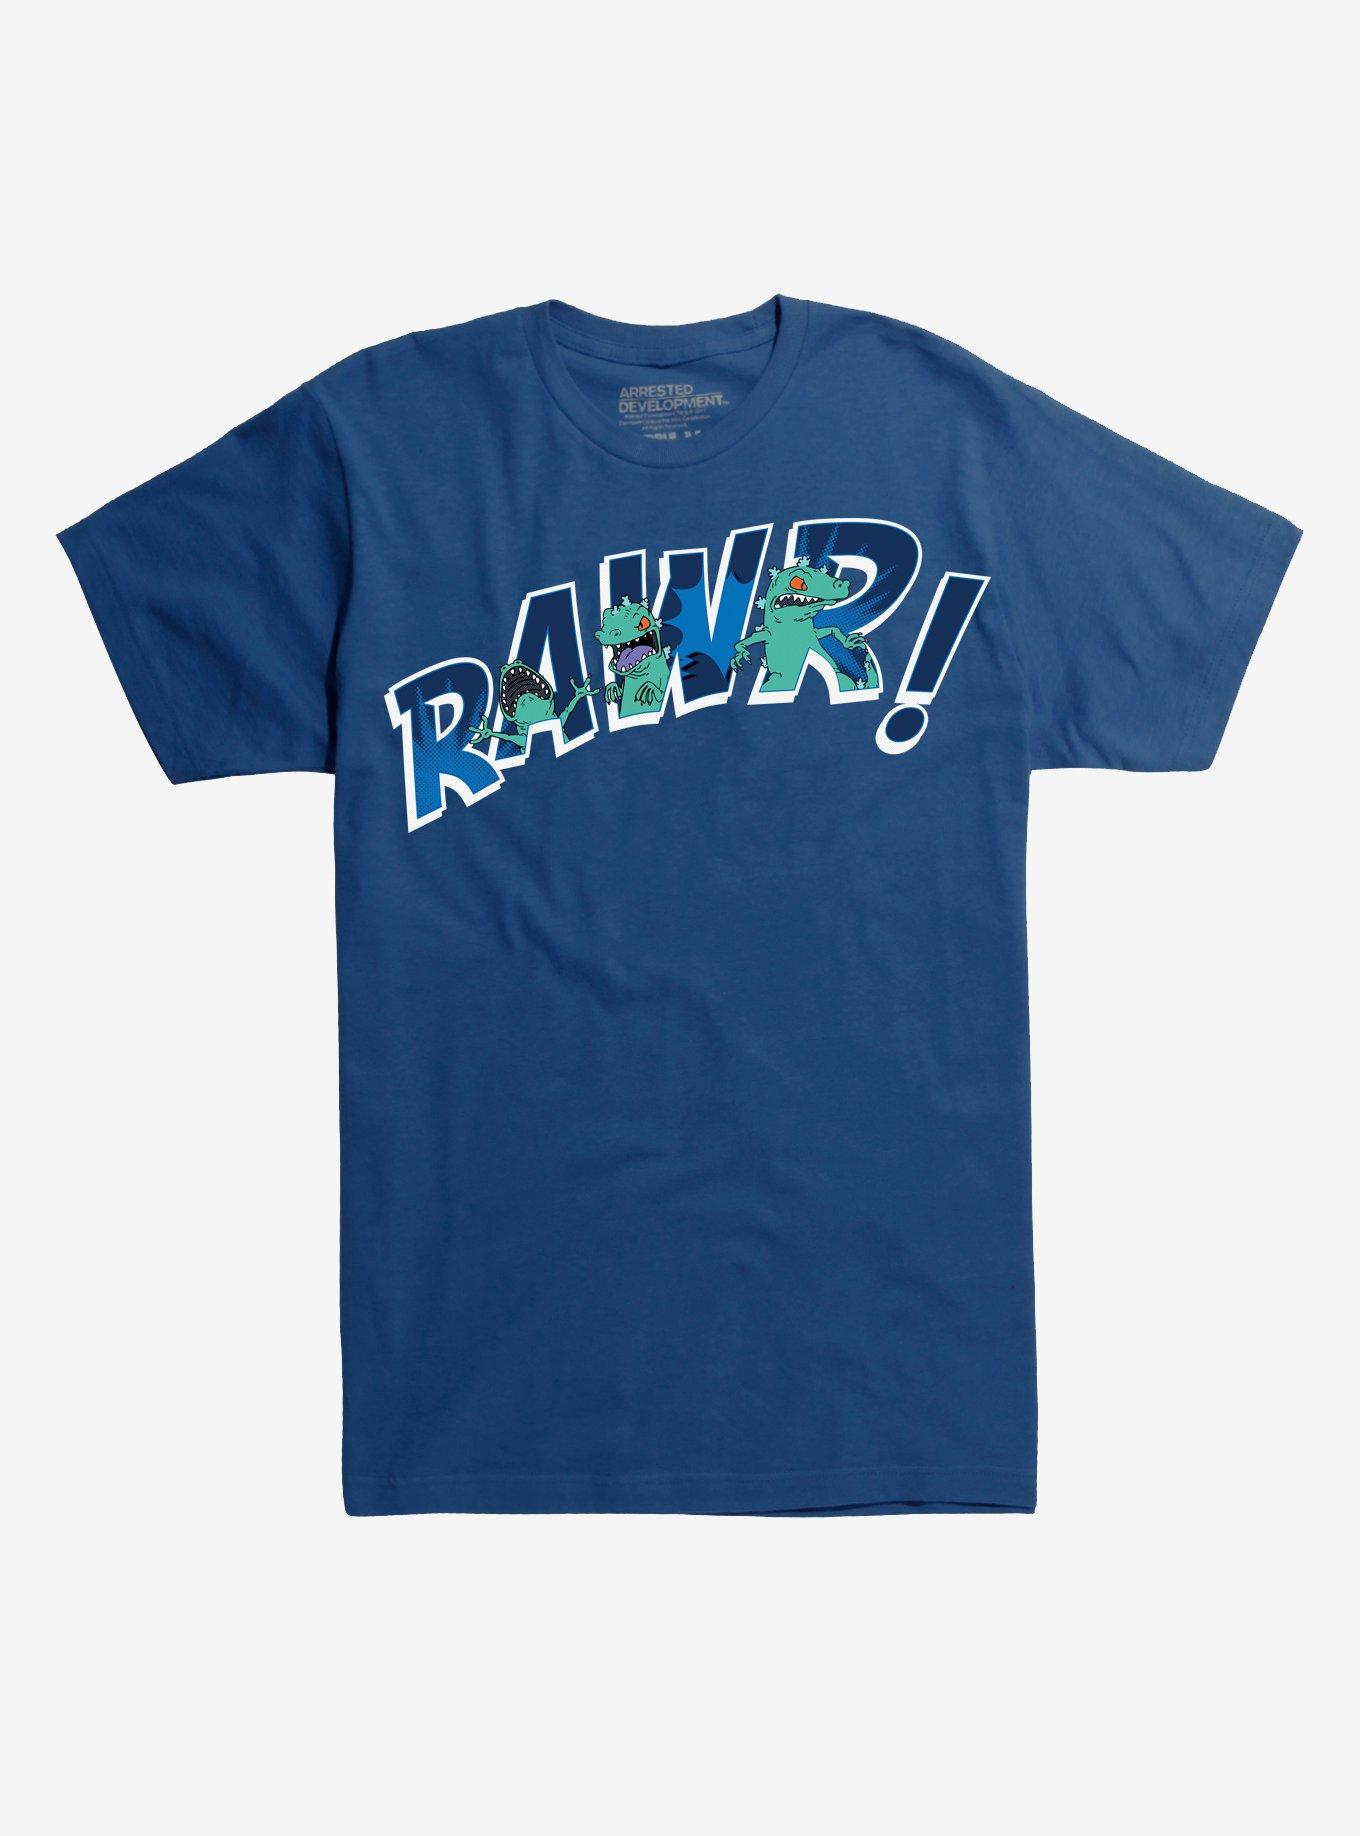 Rugrats Reptar Rawr T-Shirt | Hot Topic